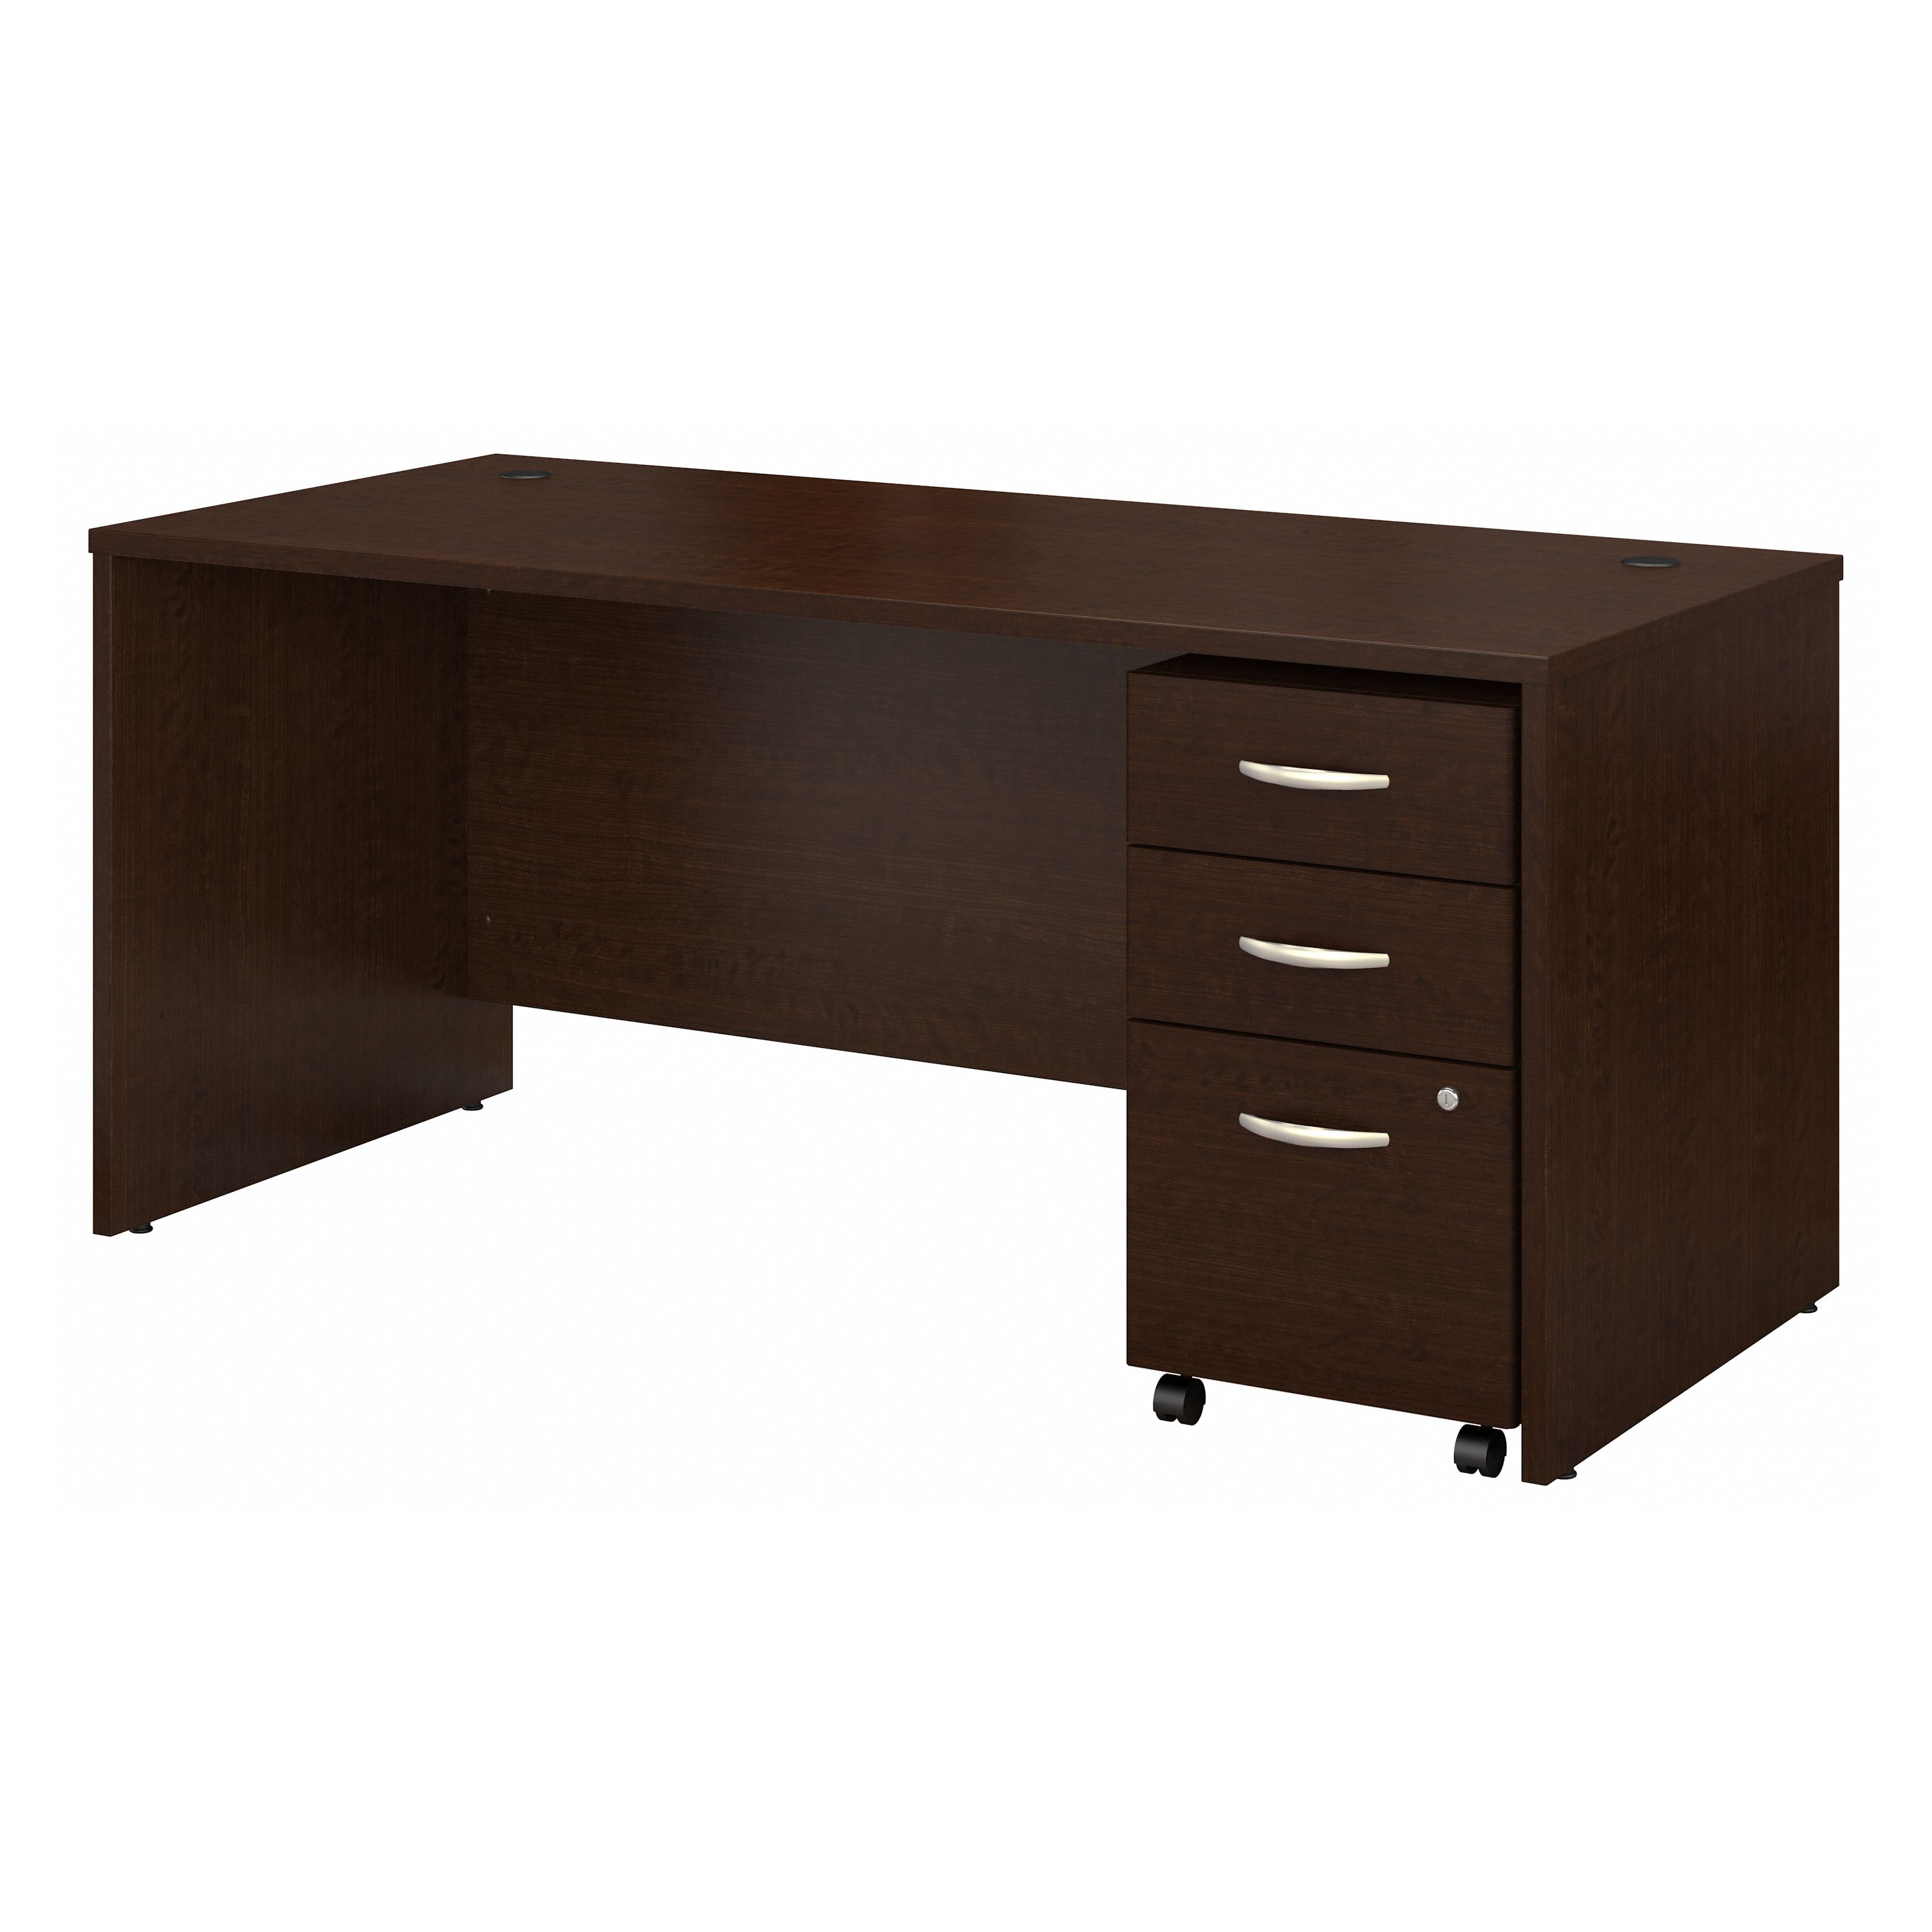 Shop Bush Business Furniture Series C 66W x 30D Office Desk with Mobile File Cabinet 02 SRC015MRSU #color_mocha cherry